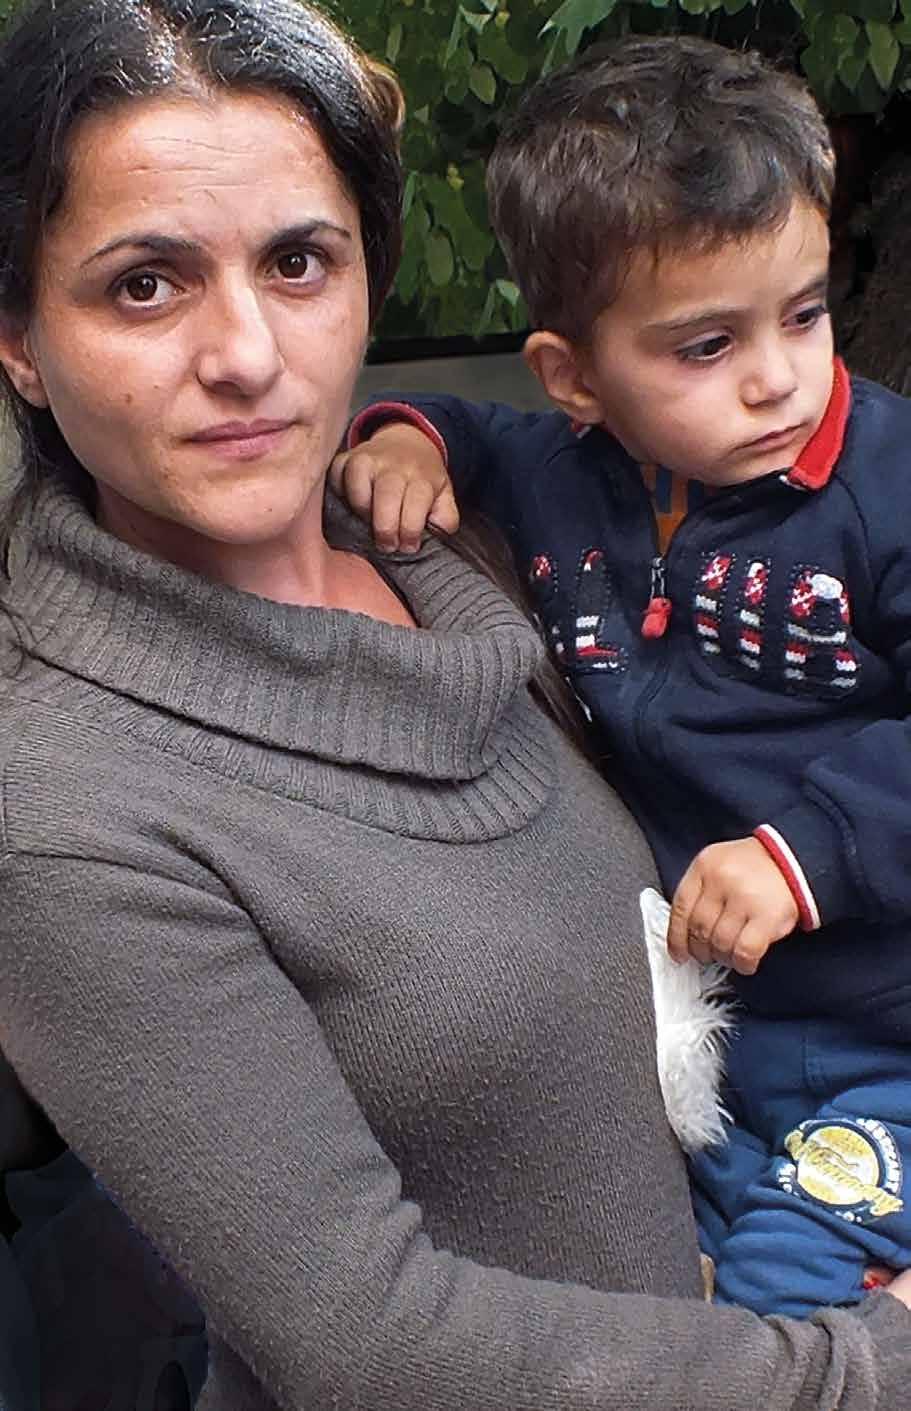 ALBANIEN Mamman som förlorat allt hopp berättar om sitt liv Jag kände att jag var världens olyckligaste människa - hopplös, drunknande i skulder, ensam med fyra barn.